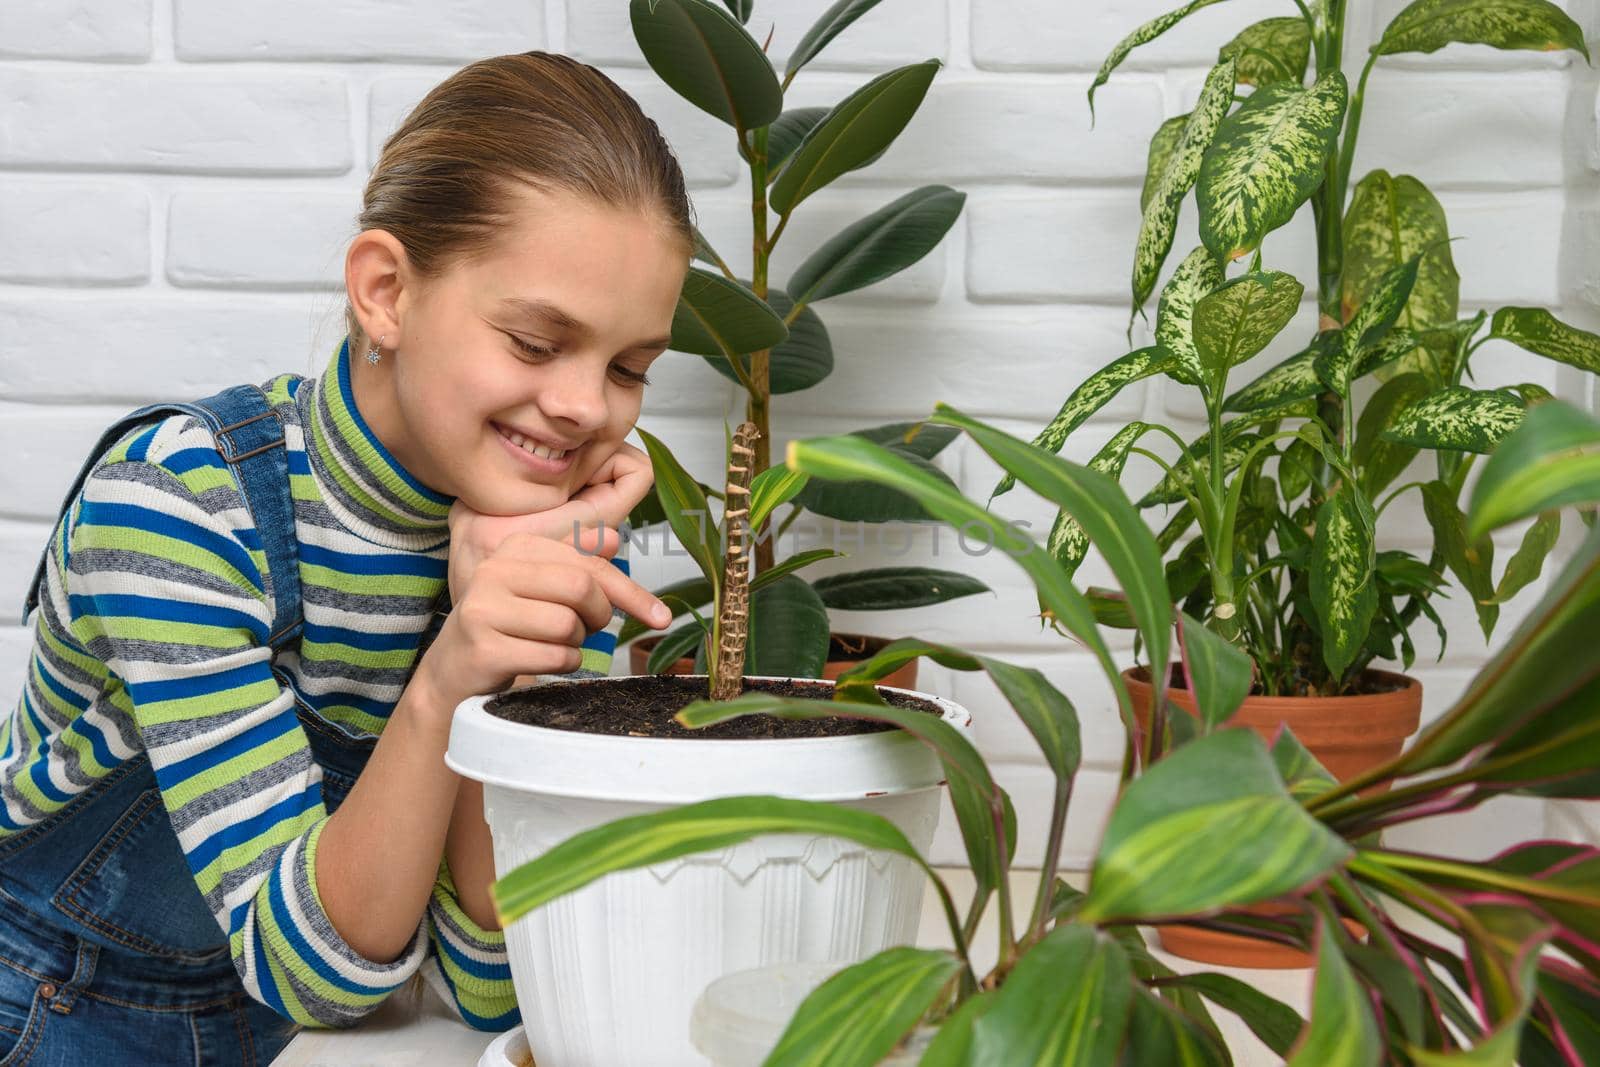 Girl happily examines houseplants